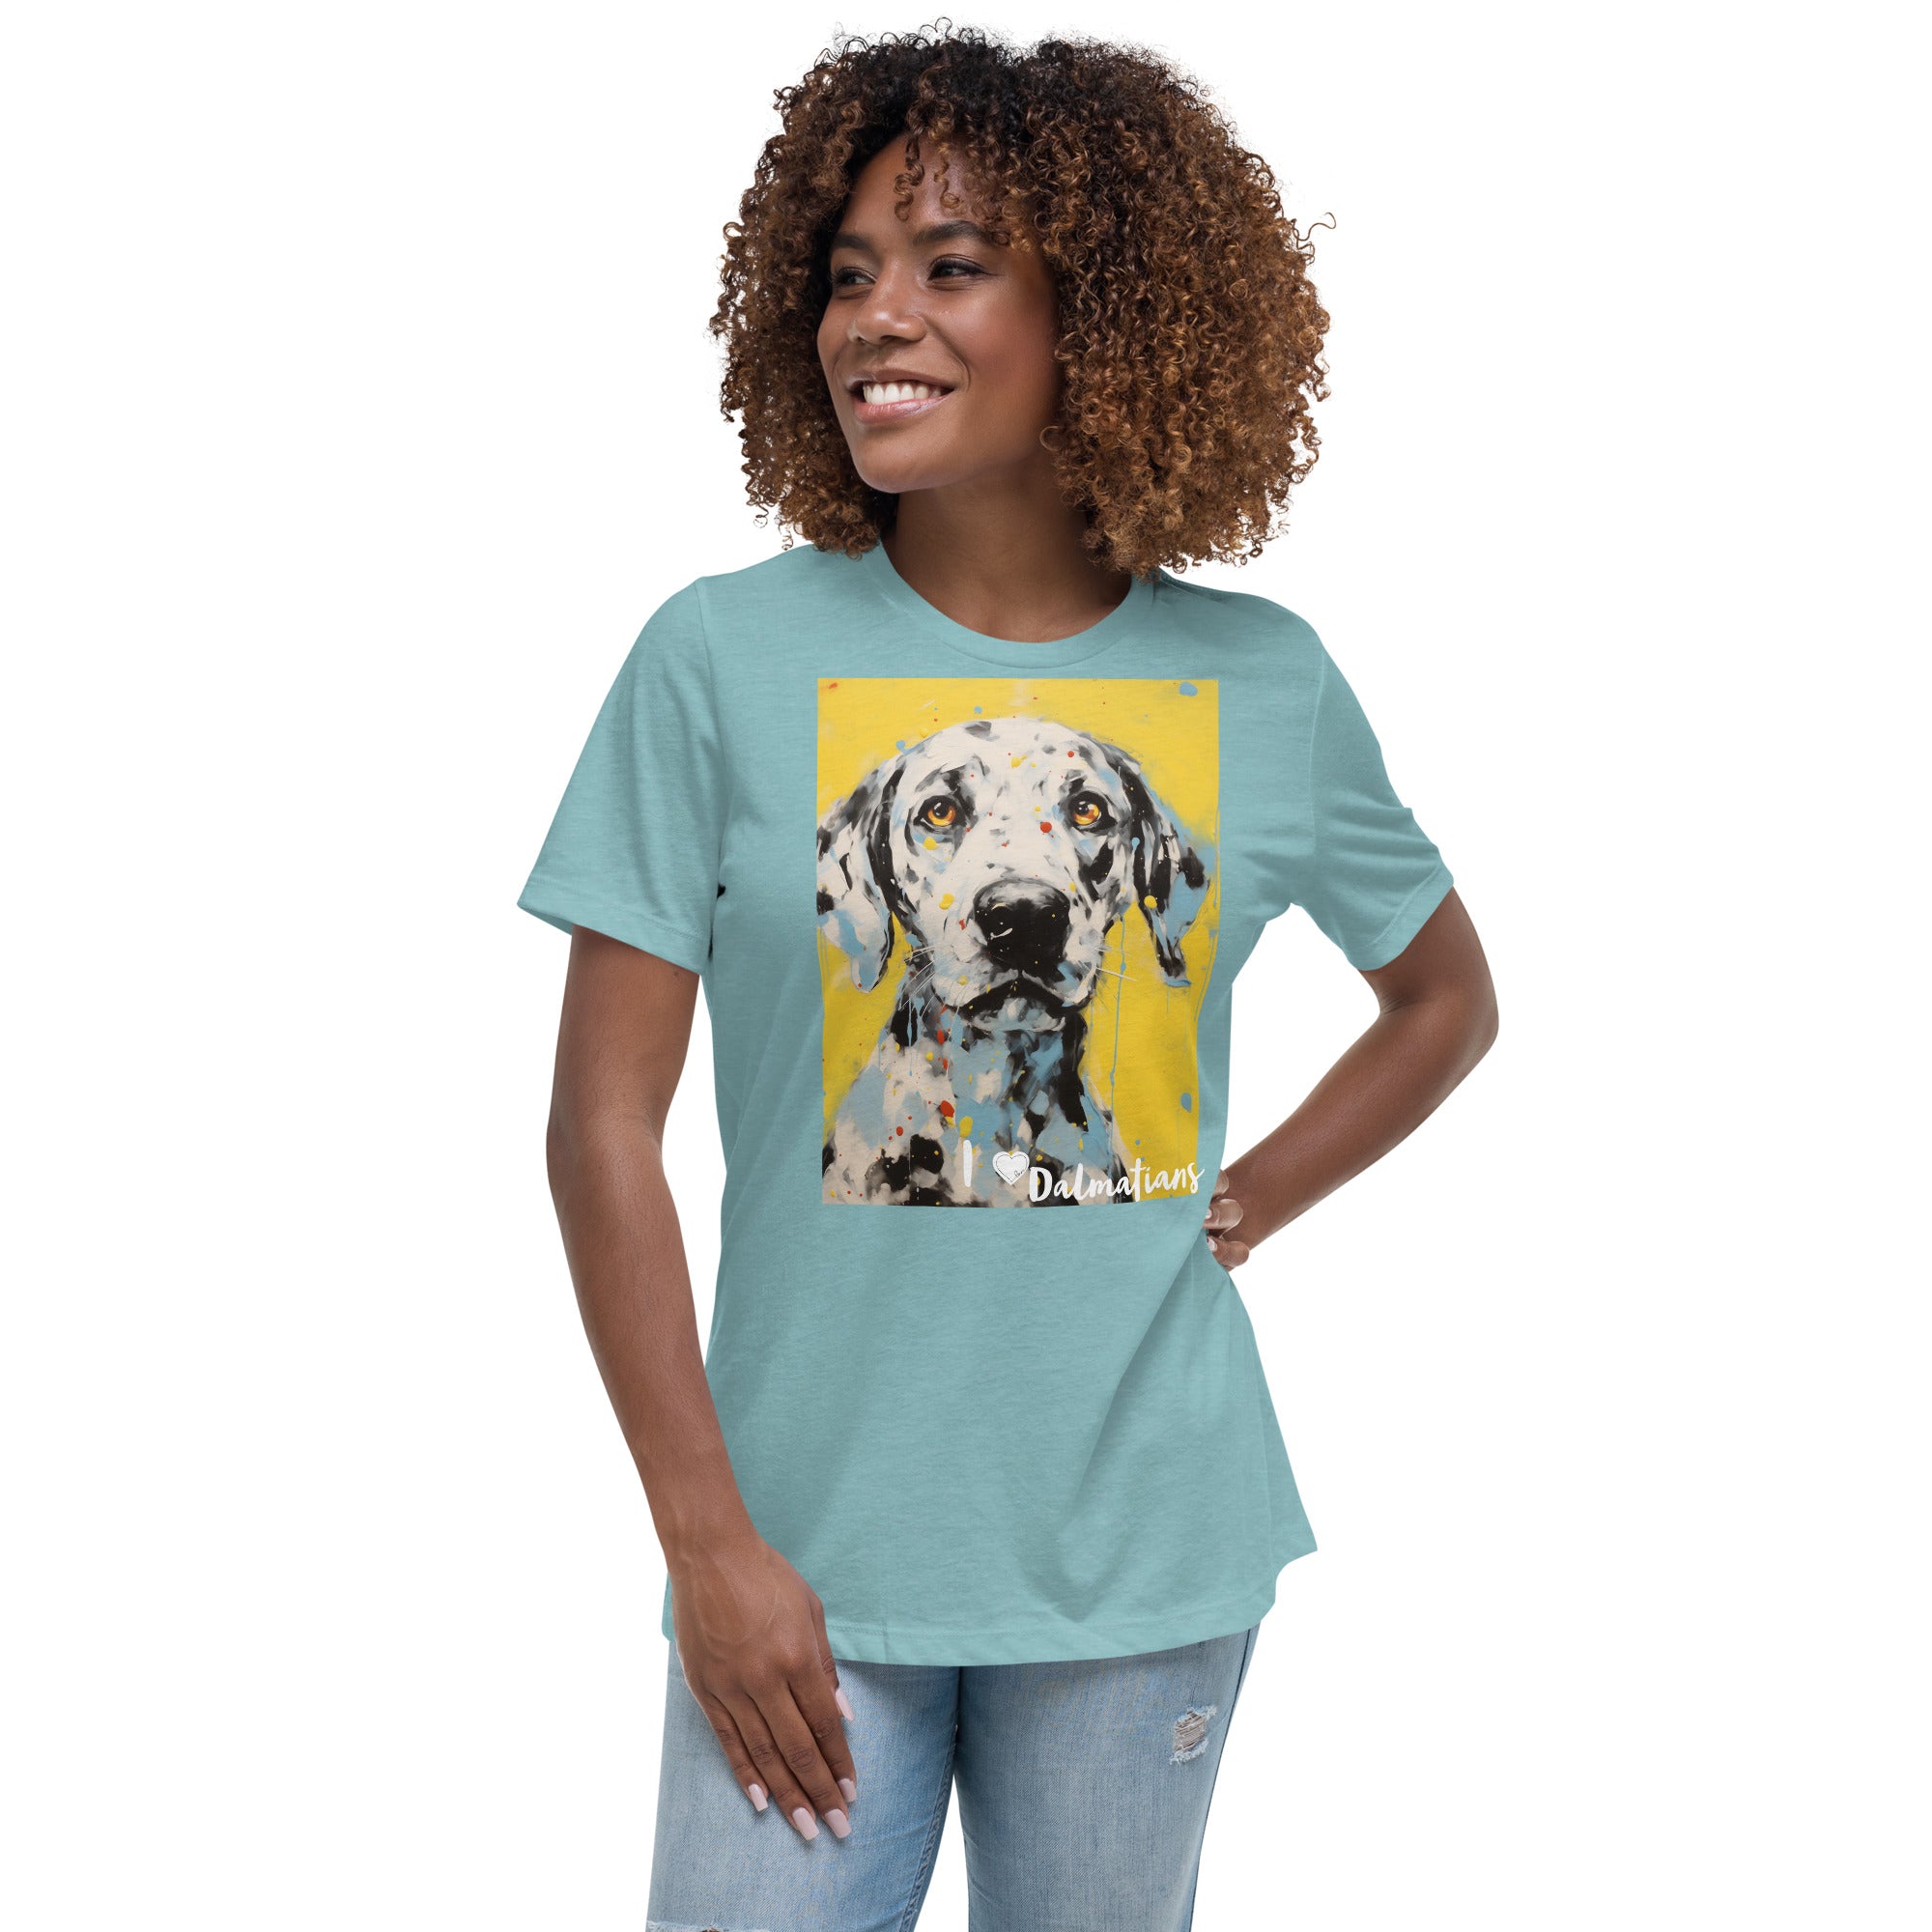 Women's Relaxed T-Shirt - I ❤ Dogs - Dalmatian